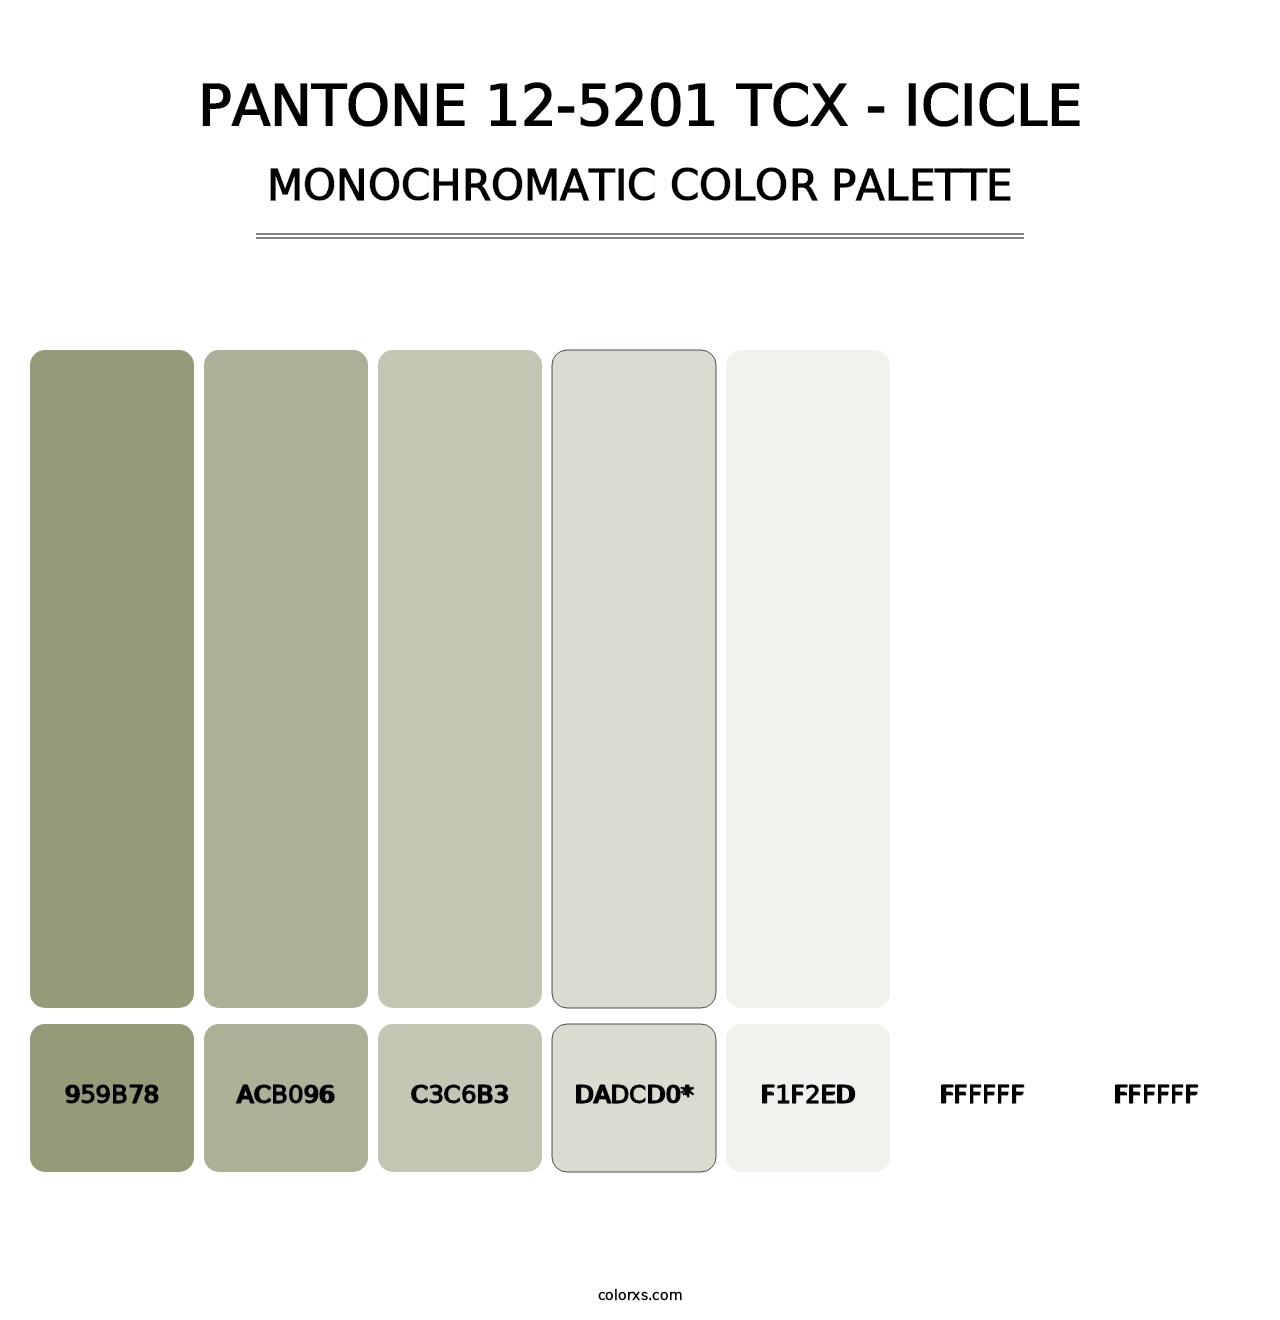 PANTONE 12-5201 TCX - Icicle - Monochromatic Color Palette